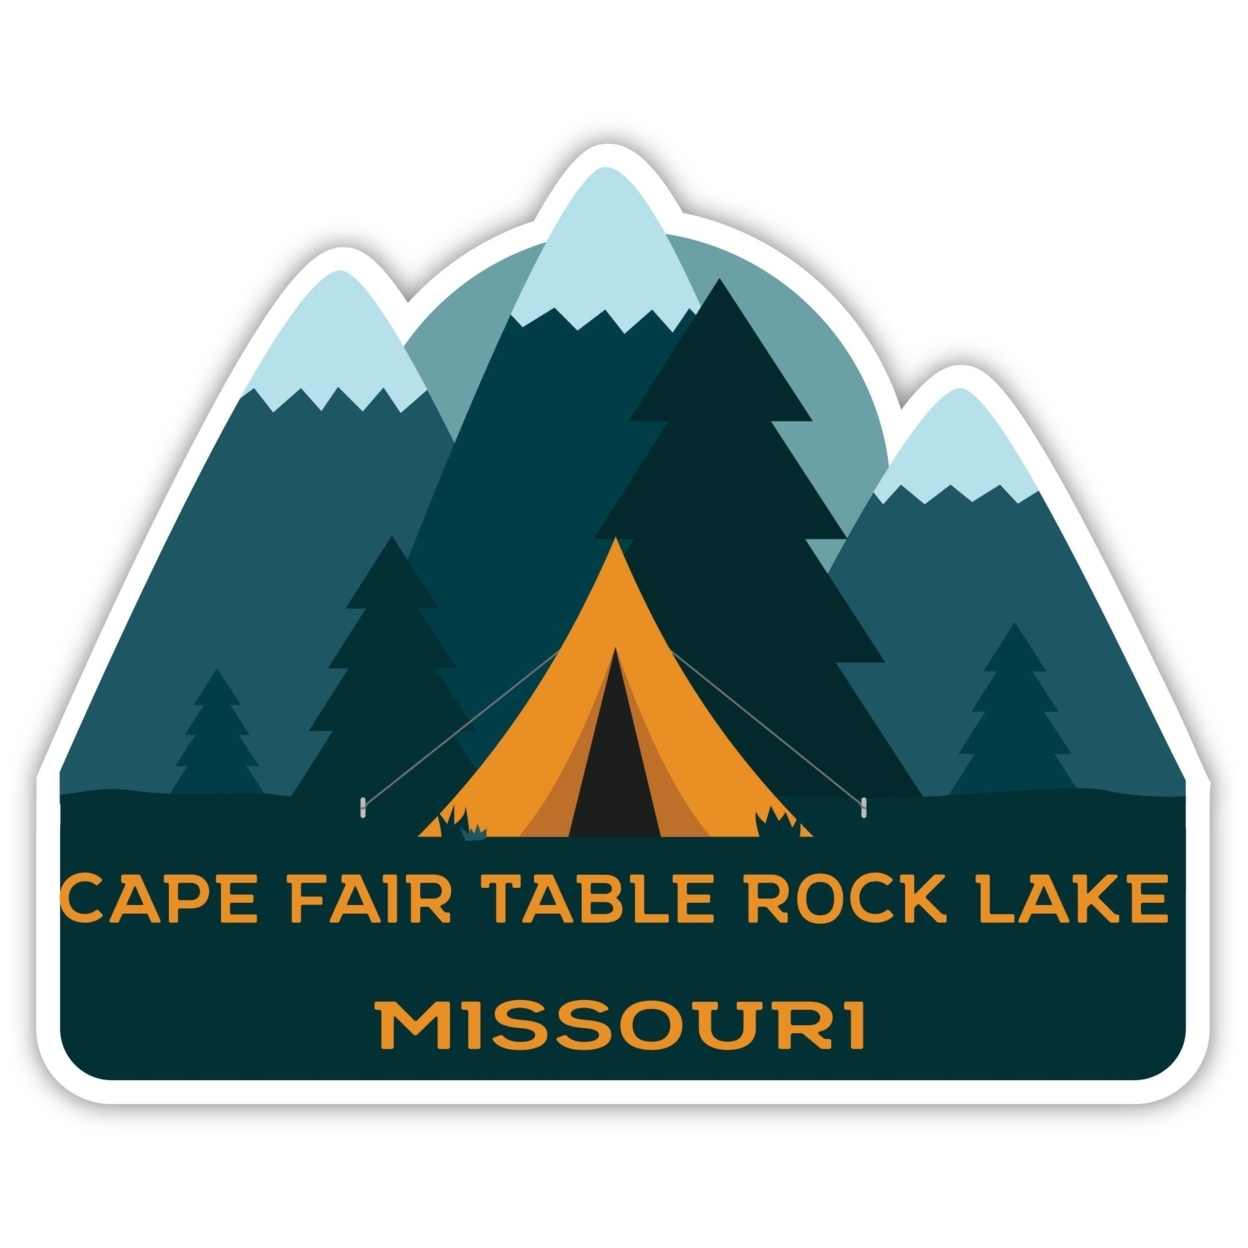 Cape Fair Table Rock Lake Missouri Souvenir Decorative Stickers (Choose Theme And Size) - Single Unit, 4-Inch, Tent